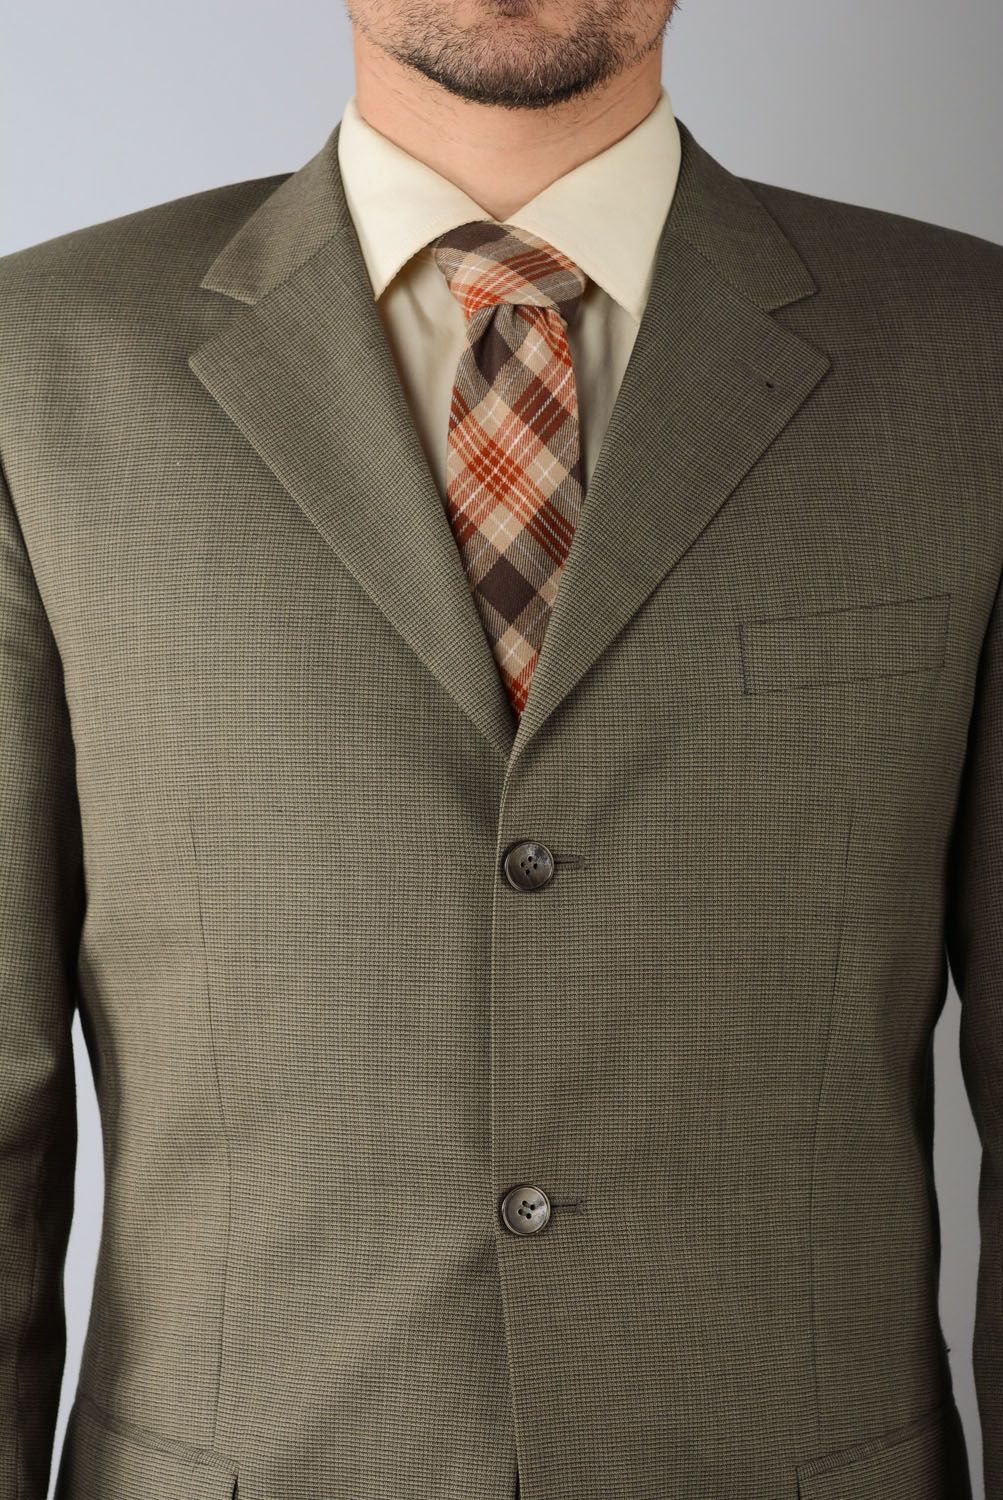 Cravate du tweed à carreaux faite main photo 4